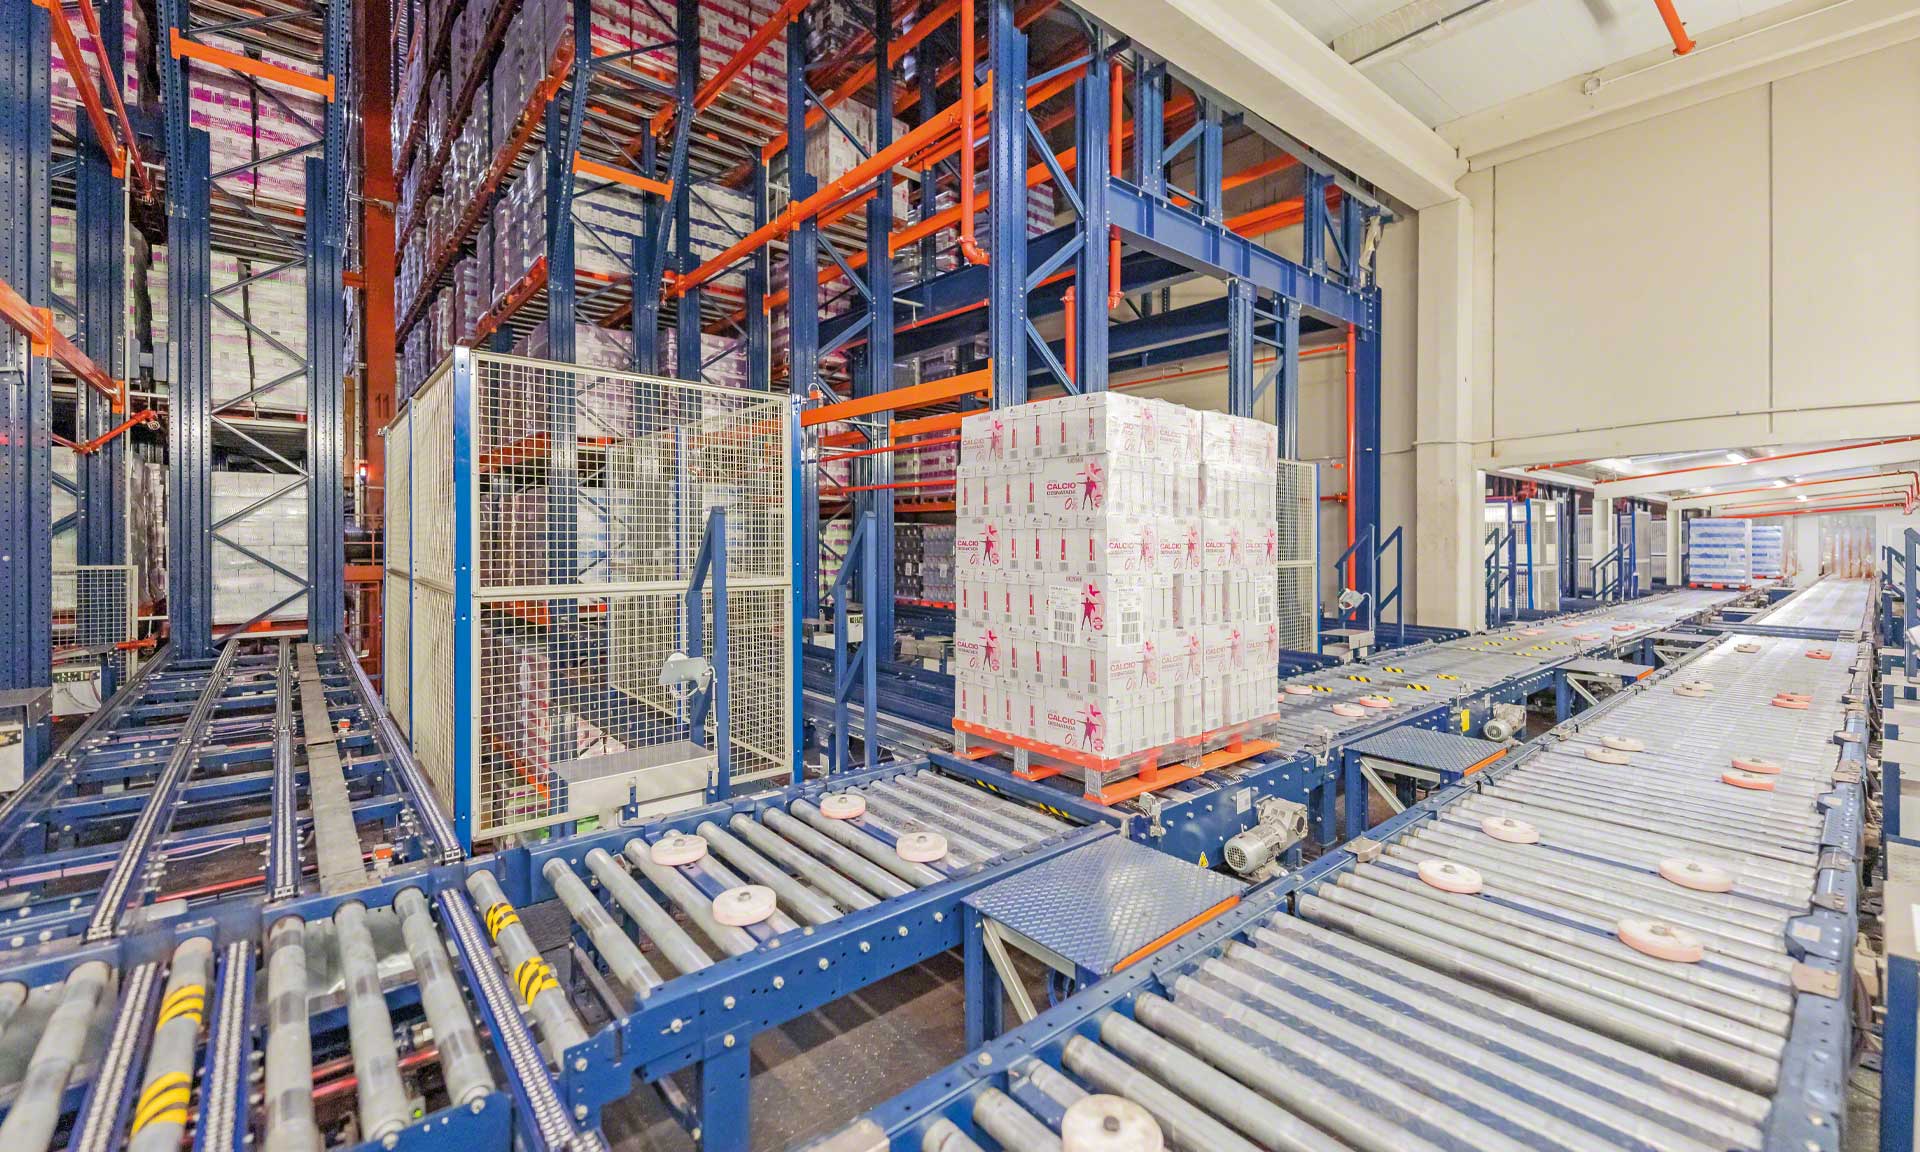 Esnelat automatizza la logistica con due magazzini automatici per prodotti lattiero caseari